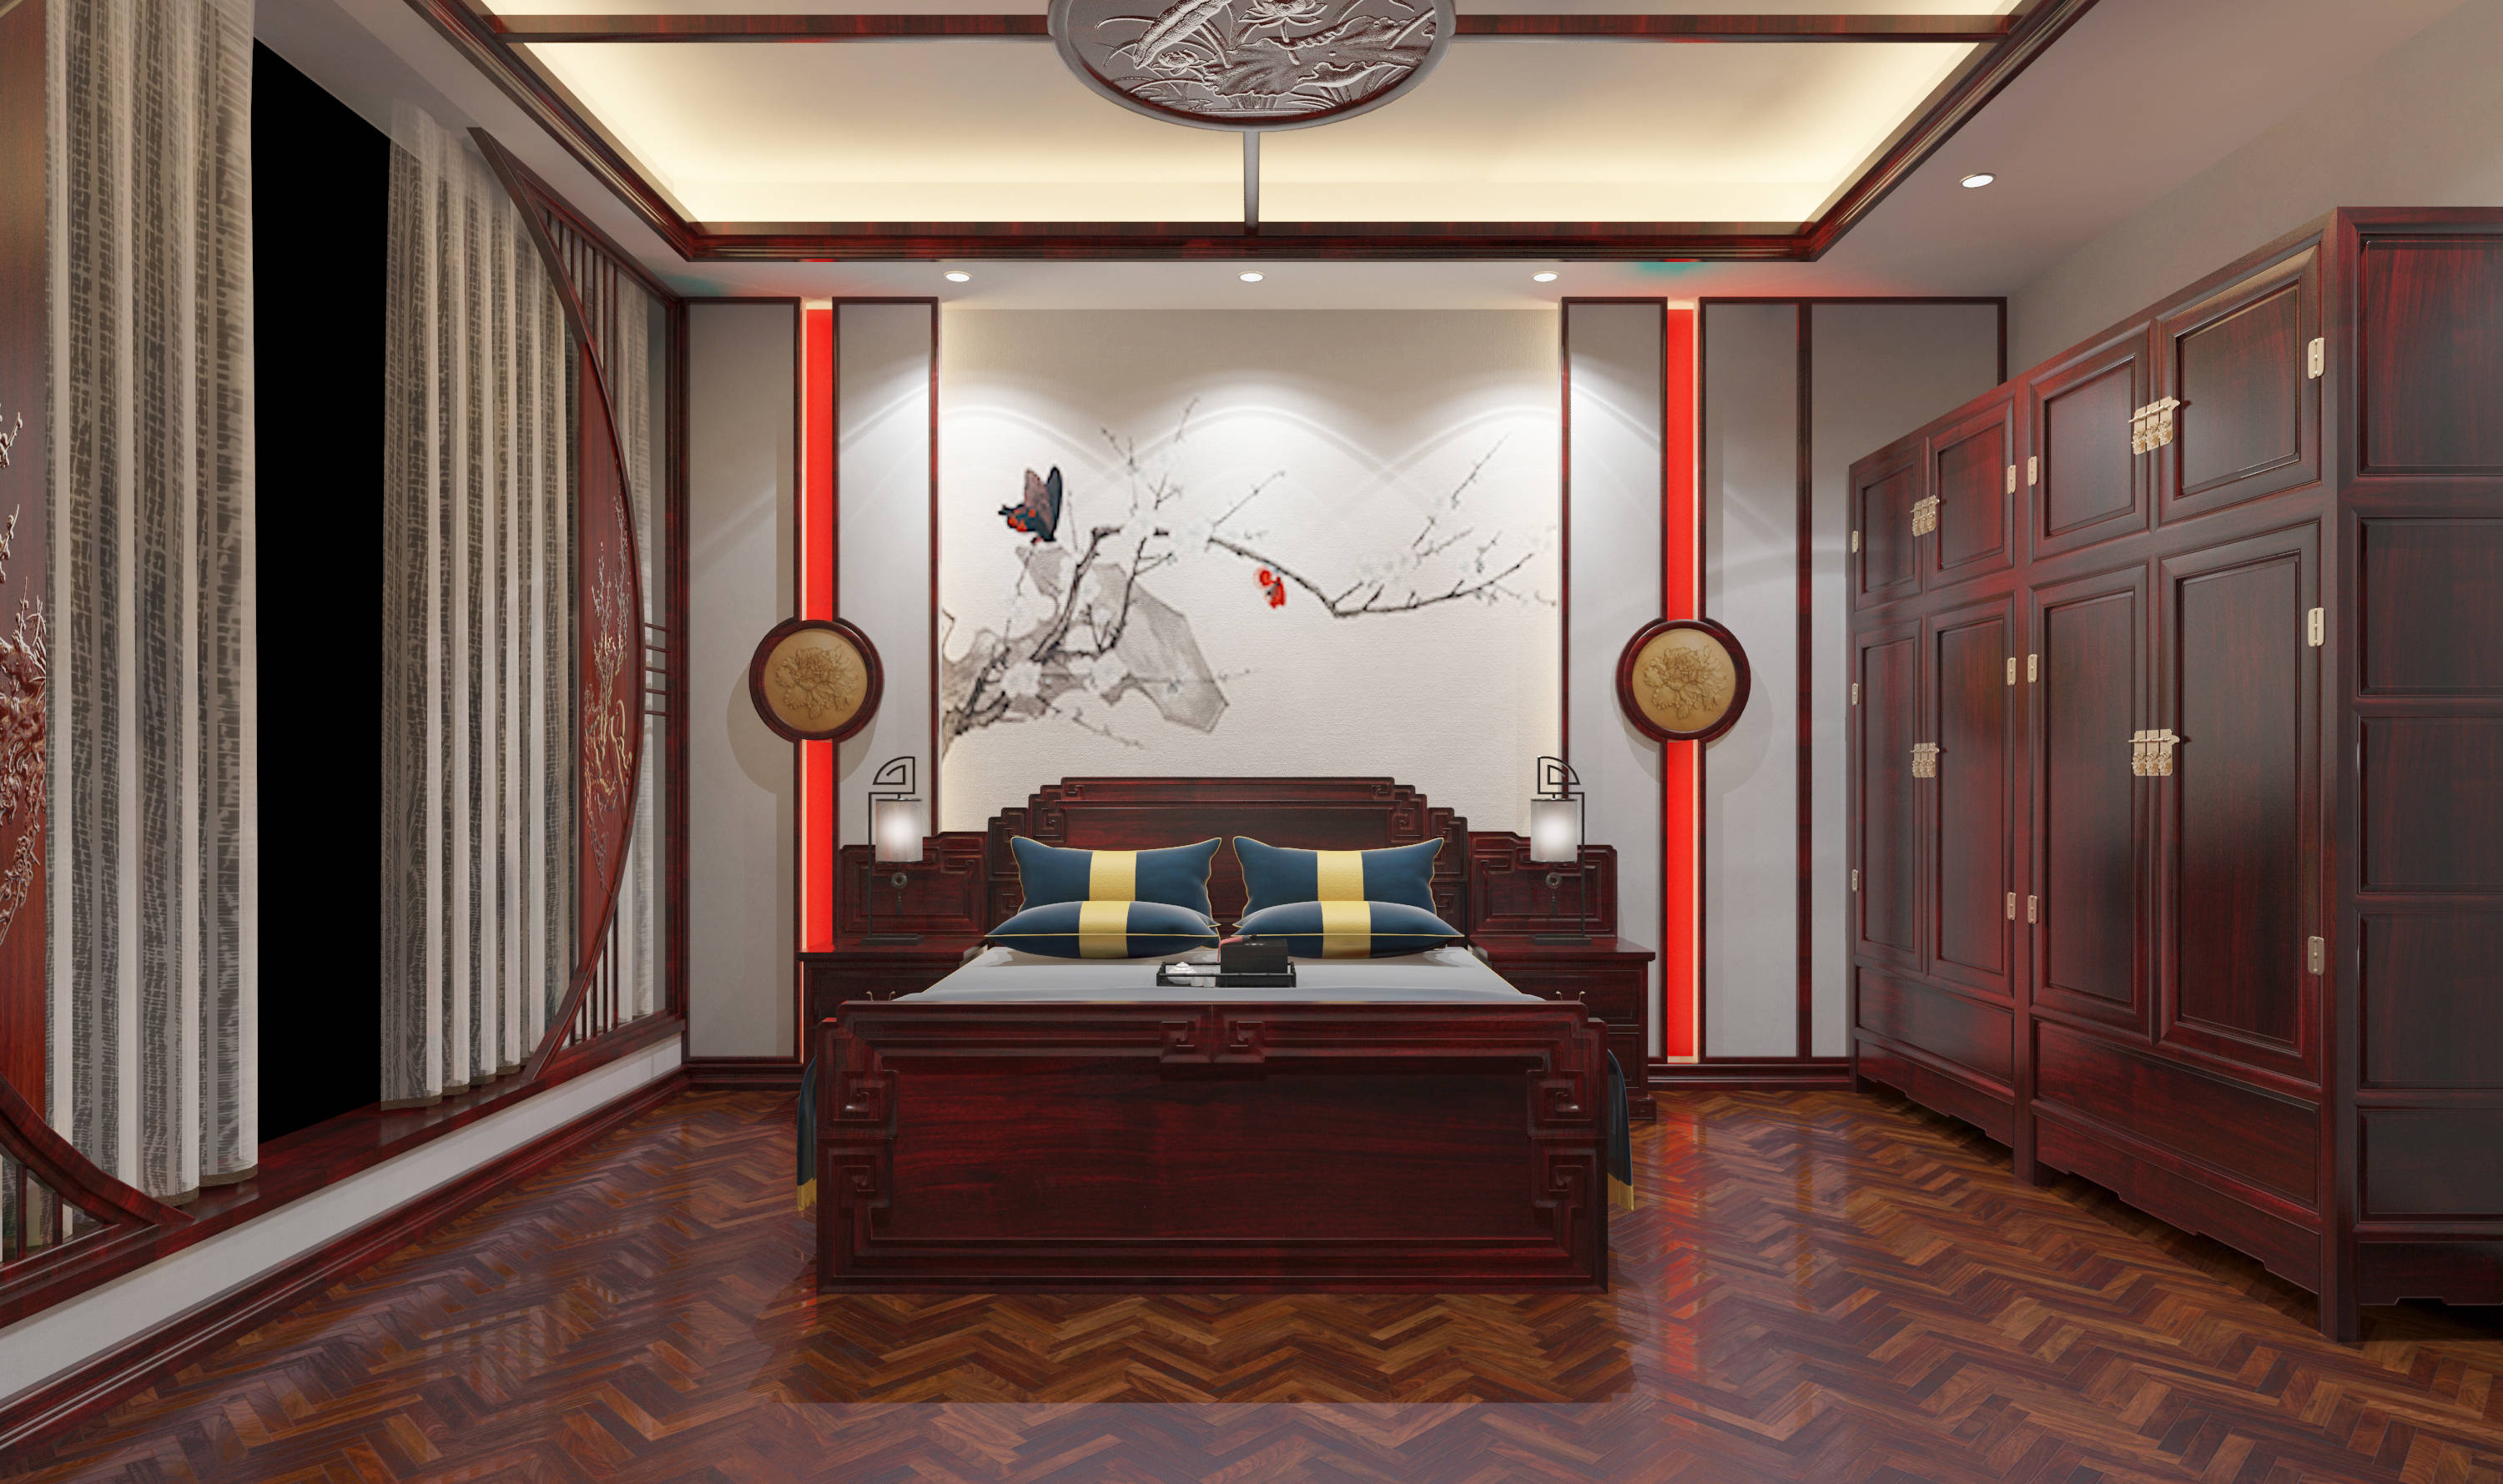 中式红木装修,感受精细厚重的复古美